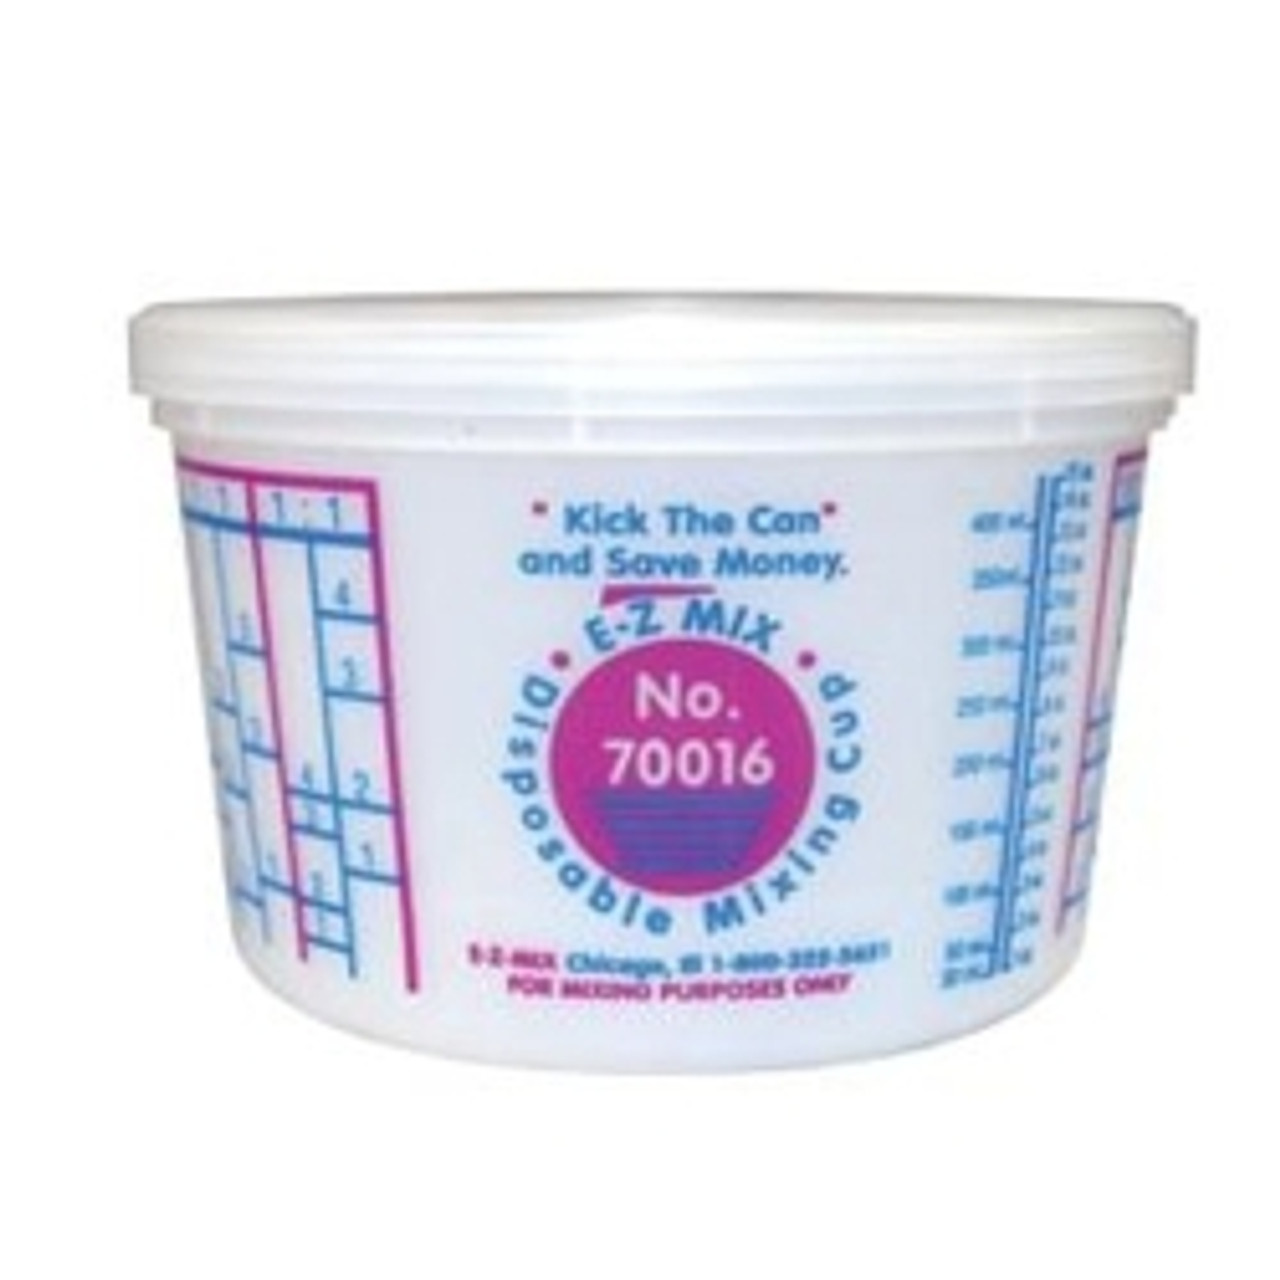 EZ Mix 70016 1 Pint Cup, 100 Pack